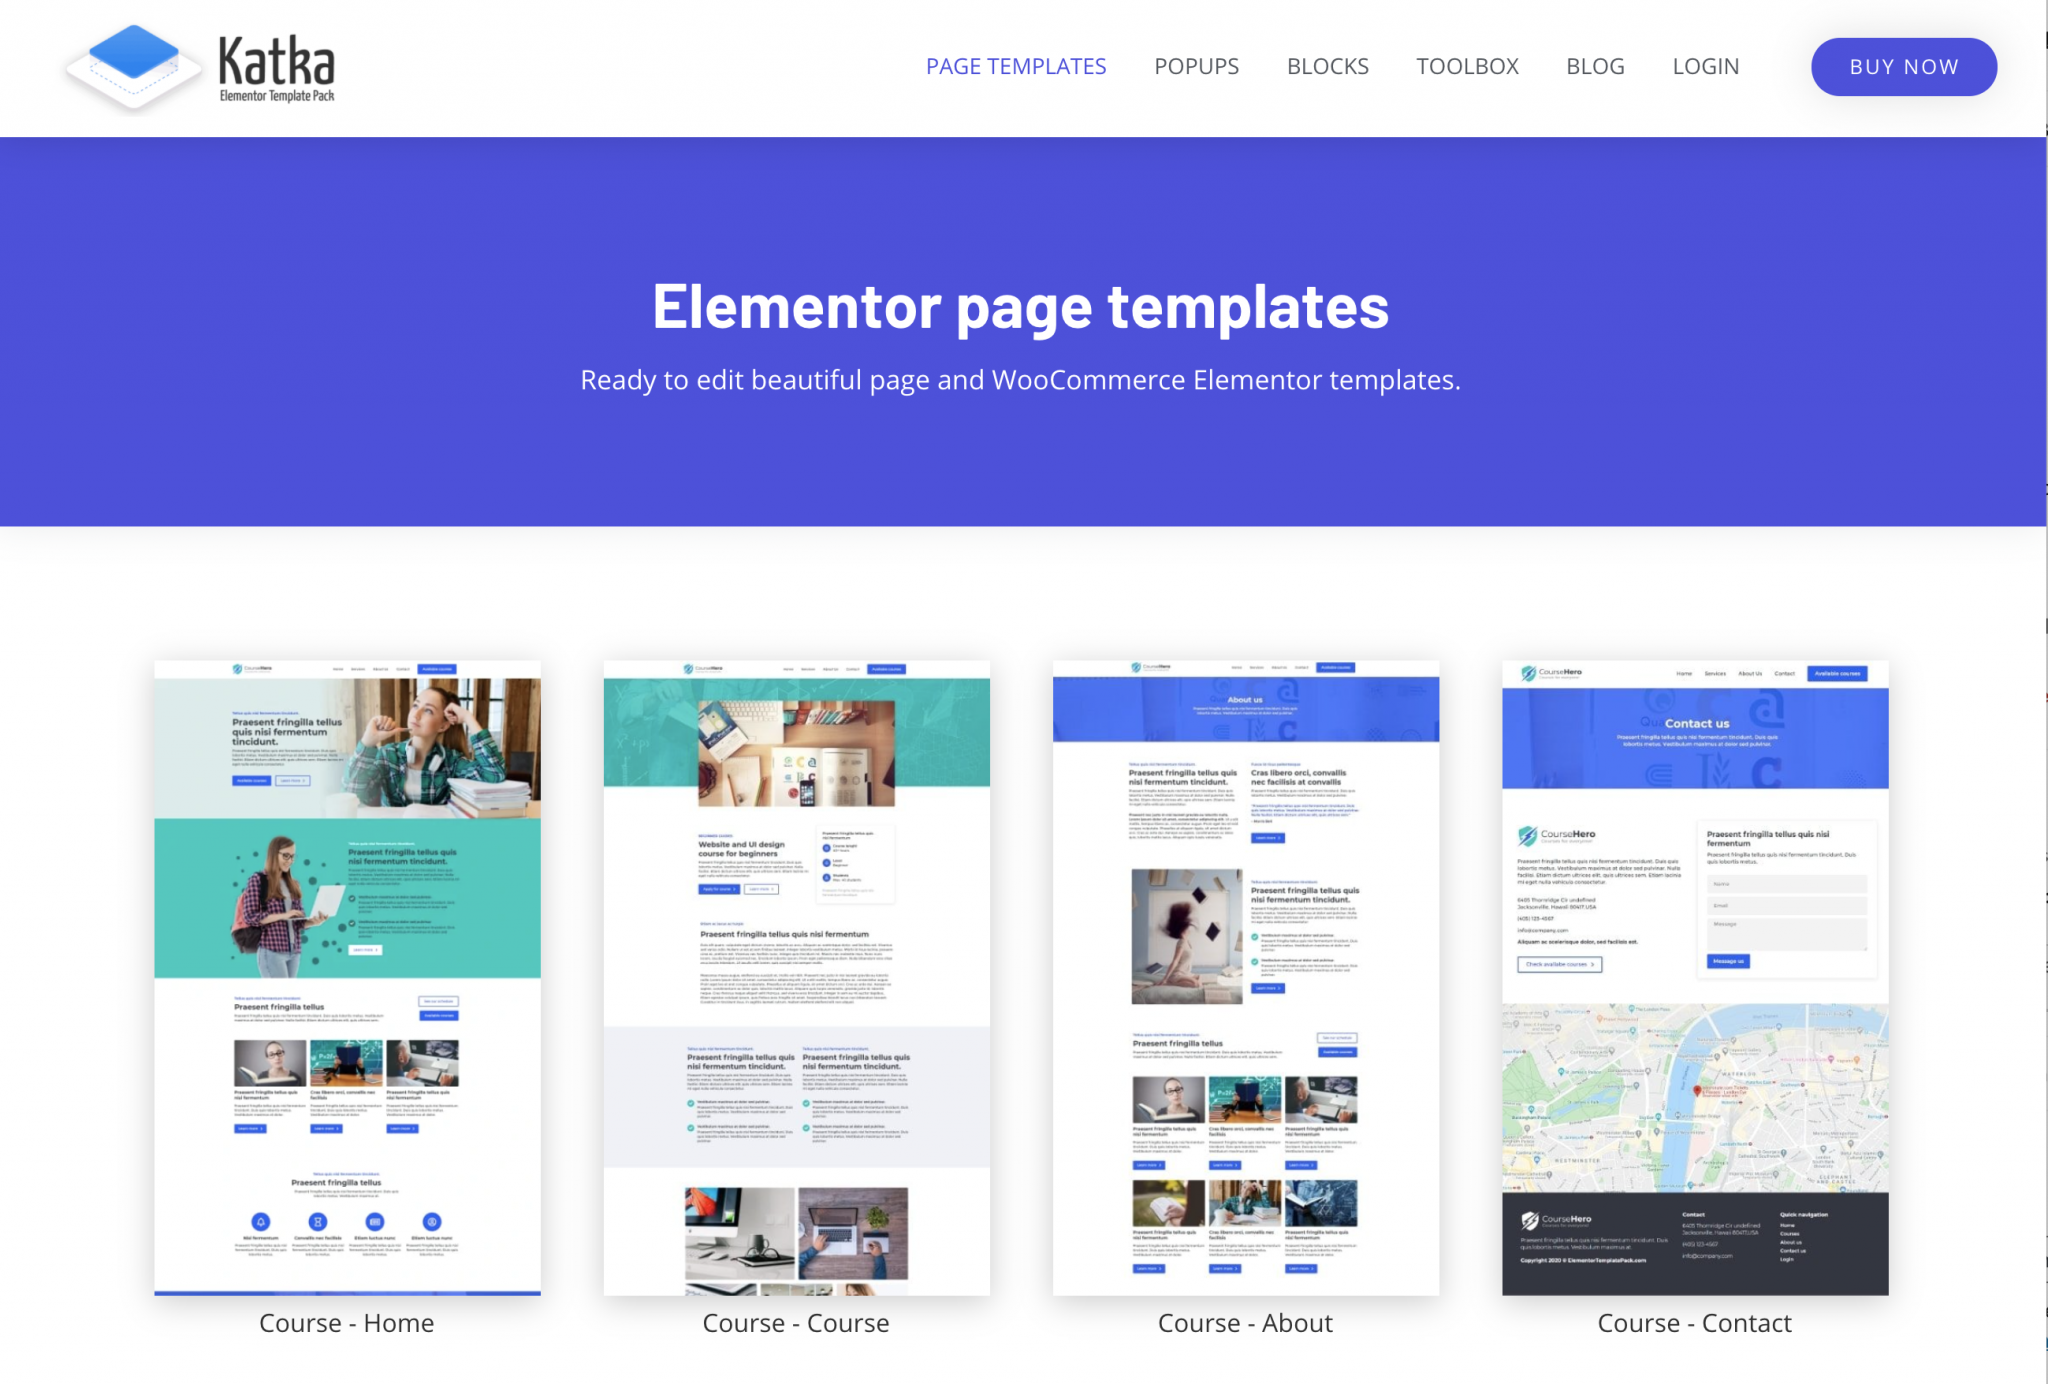 Elementor template pack website homepage